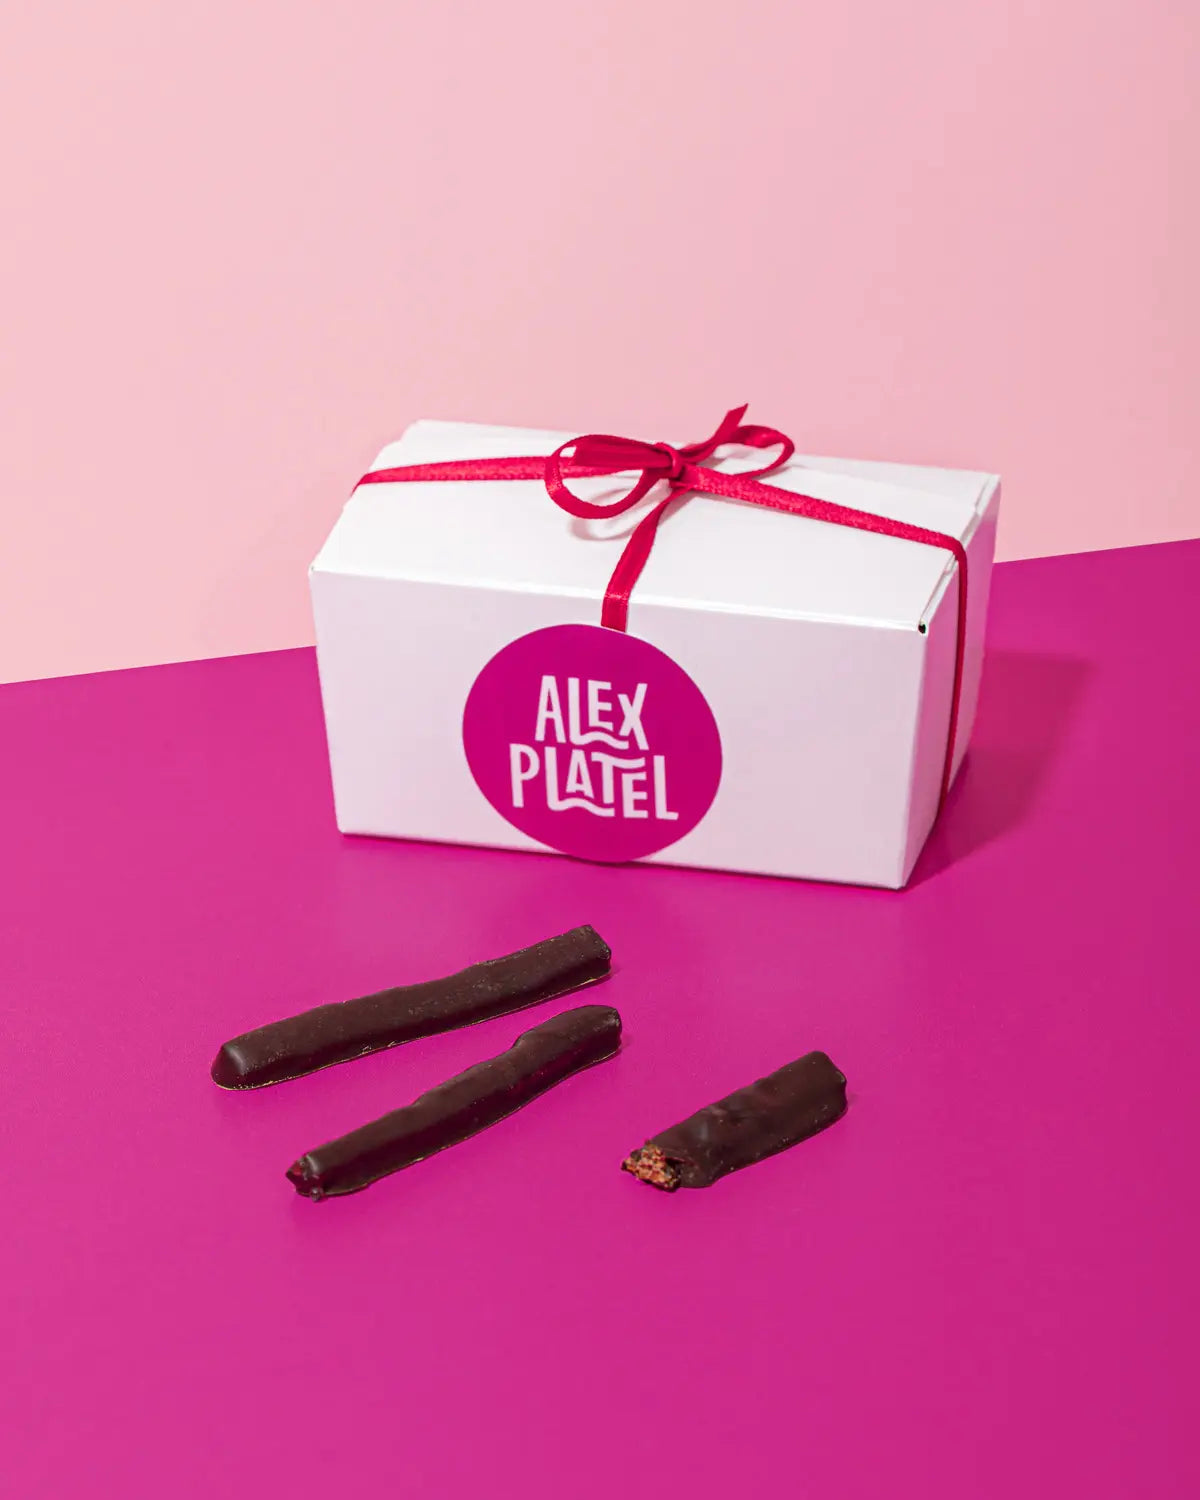 Alex-platel-aiguillettes-chocolat